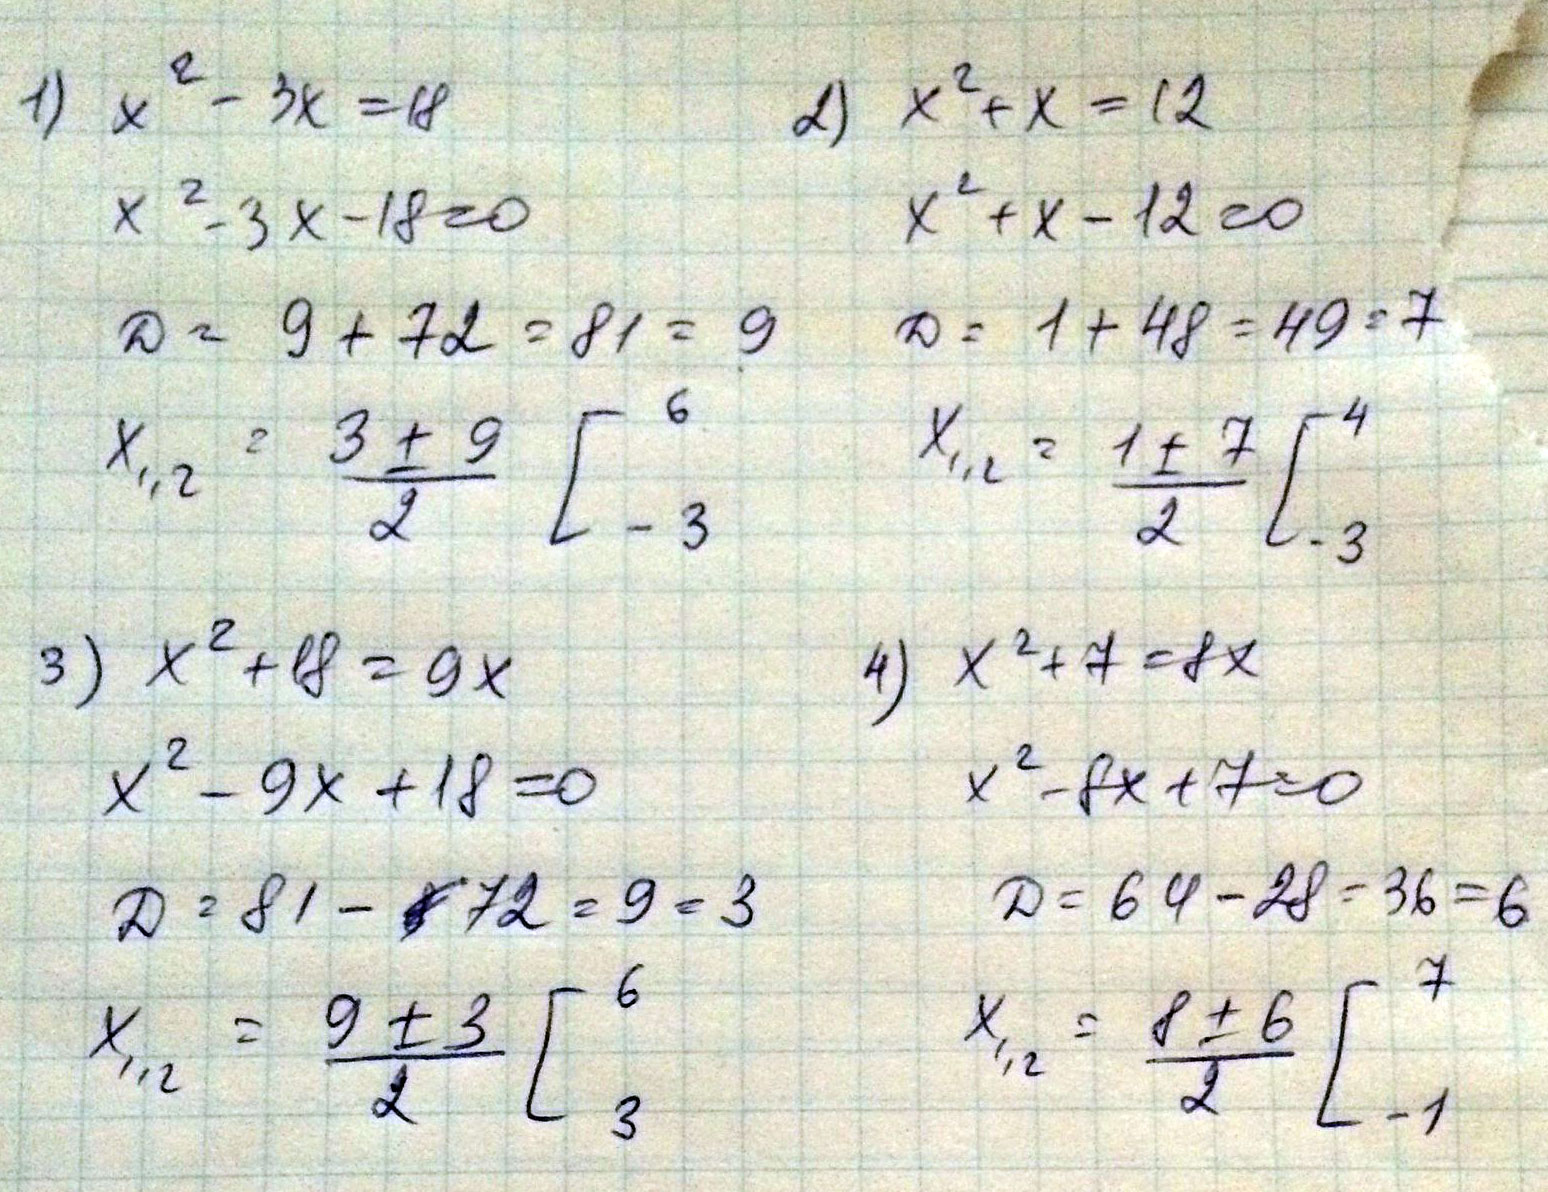 18 7 x 3 5 2x. 3x в квадрате - 6x. X2+x-2 дискриминант. 7x в квадрате-6x-1=0. Решение 3x в квадрате-2x-3=0.